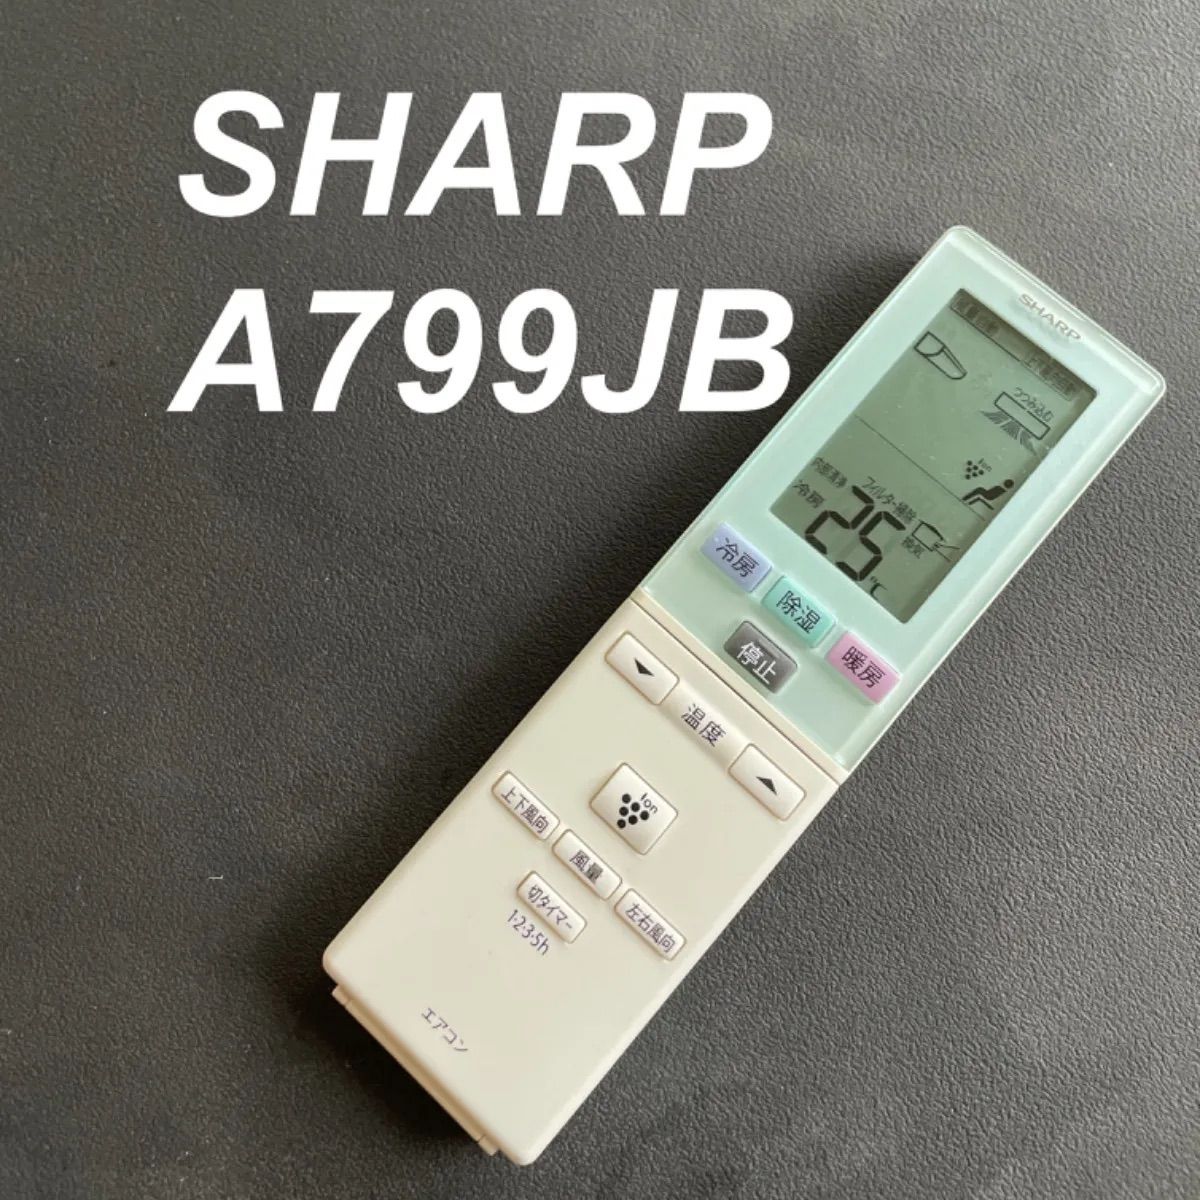 SHARP シャープ エアコン リモコン A799JB - エアコン